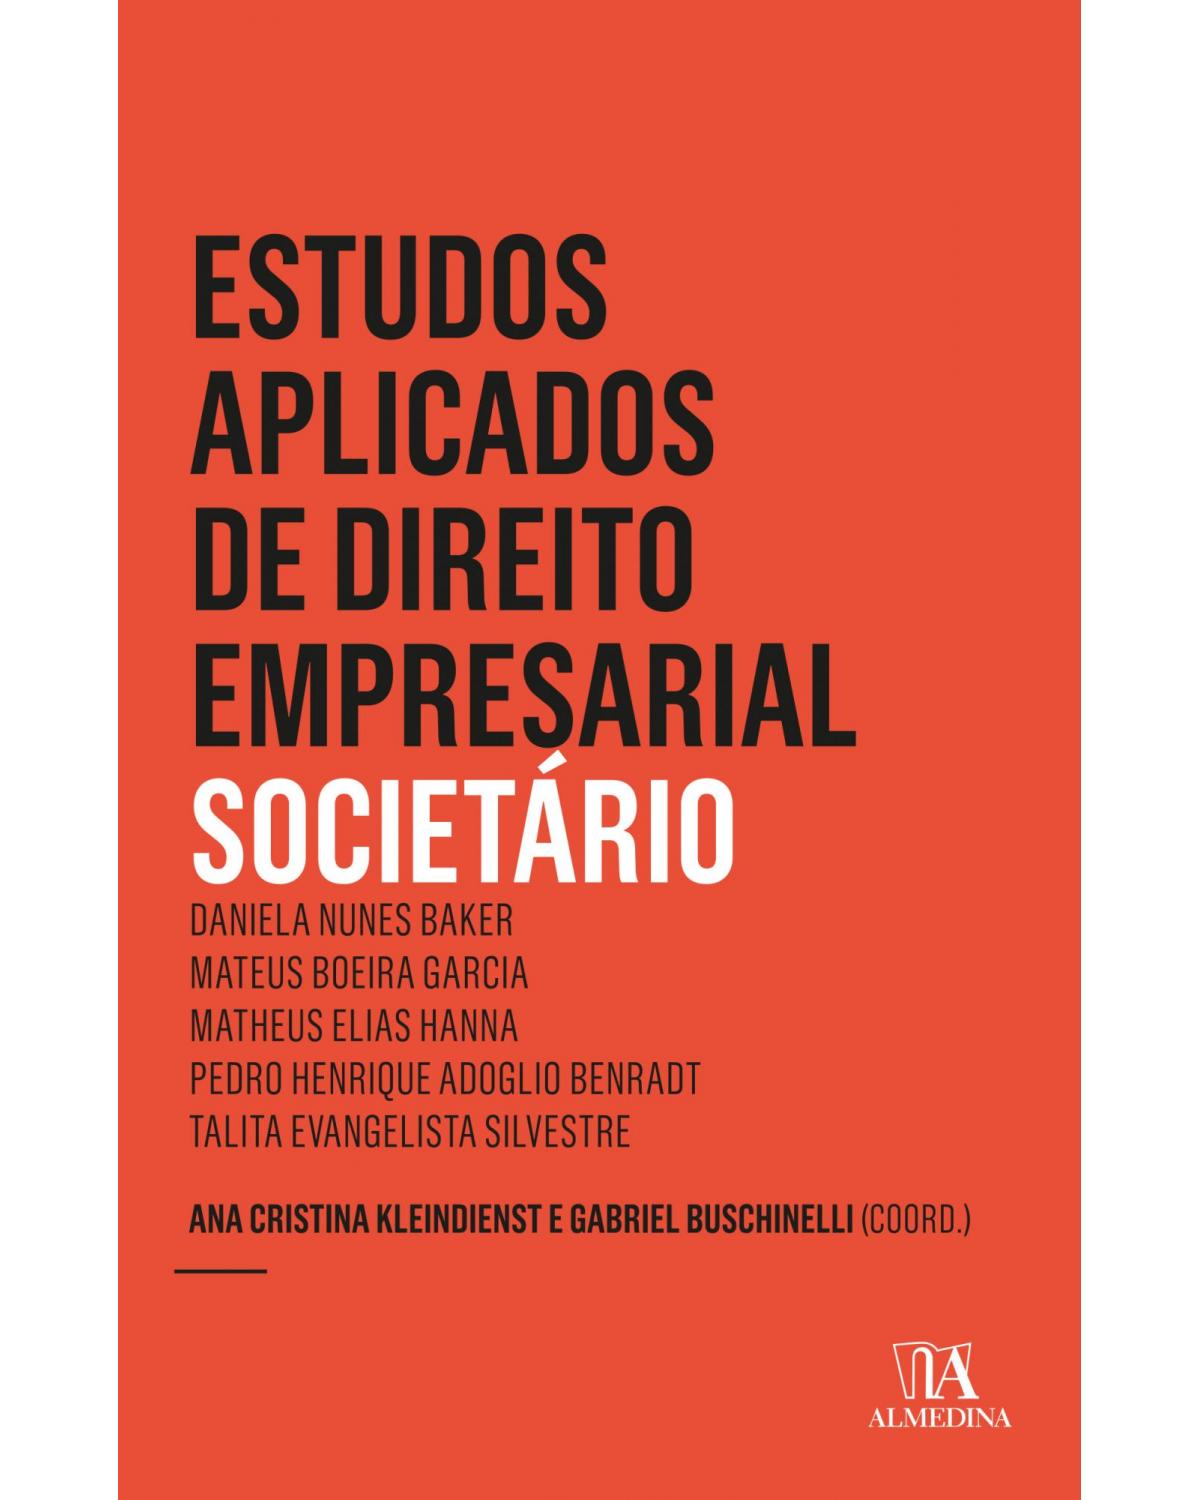 Estudos aplicados de direito empresarial - societário - 6ª Edição | 2020